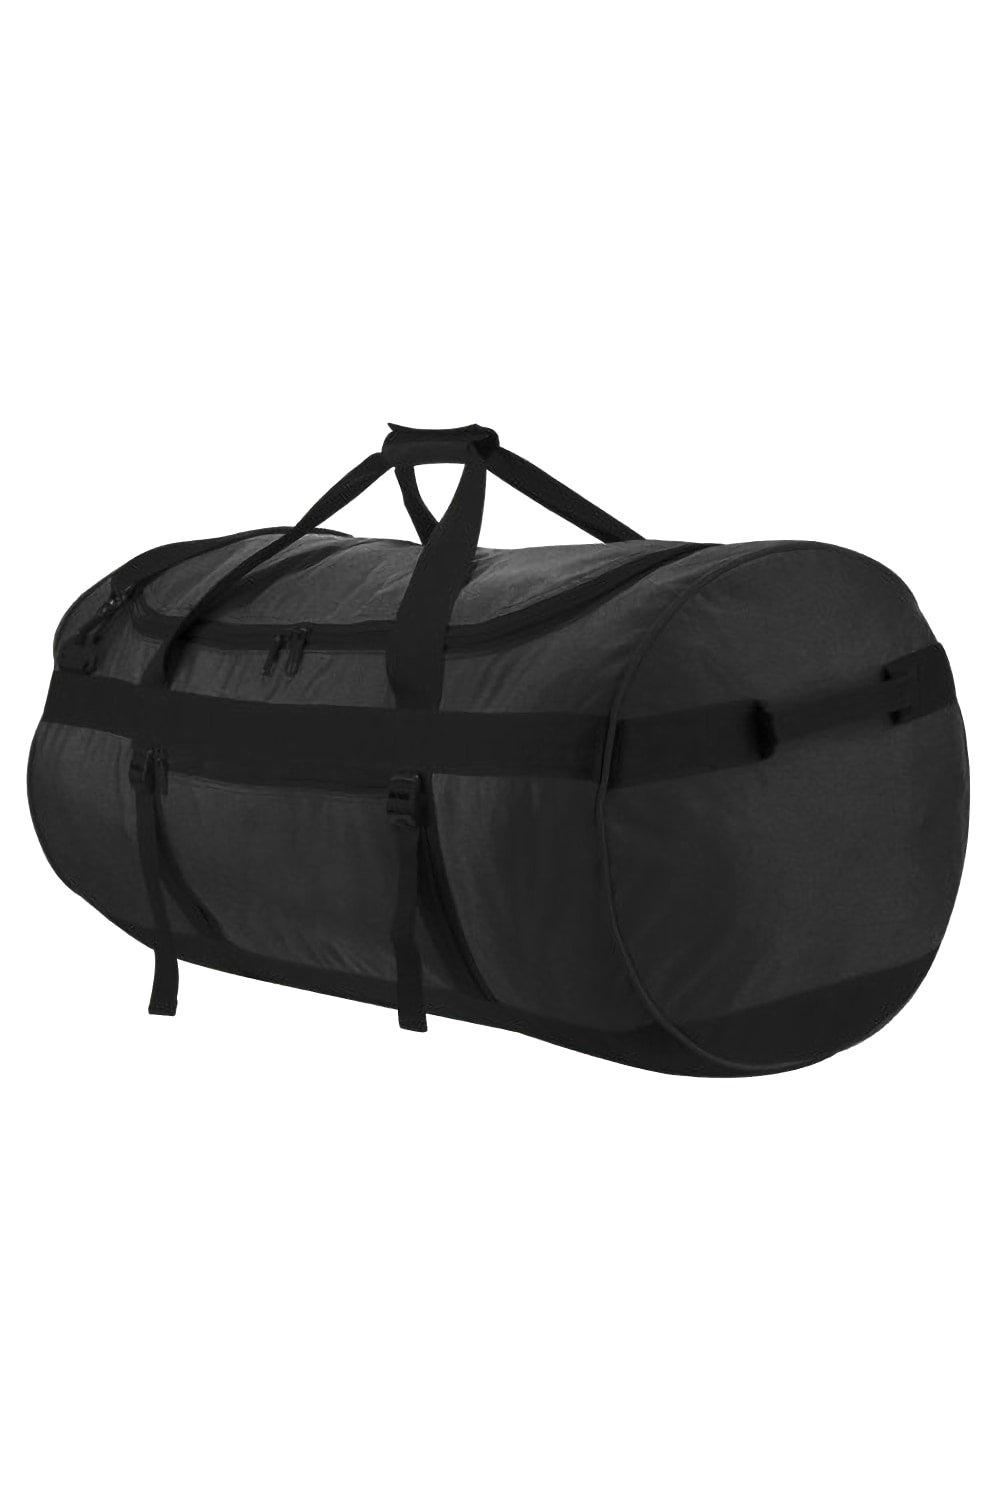 Спортивная сумка Atlantic Oversize Kitbag (110 литров) (2 шт.) Shugon, черный